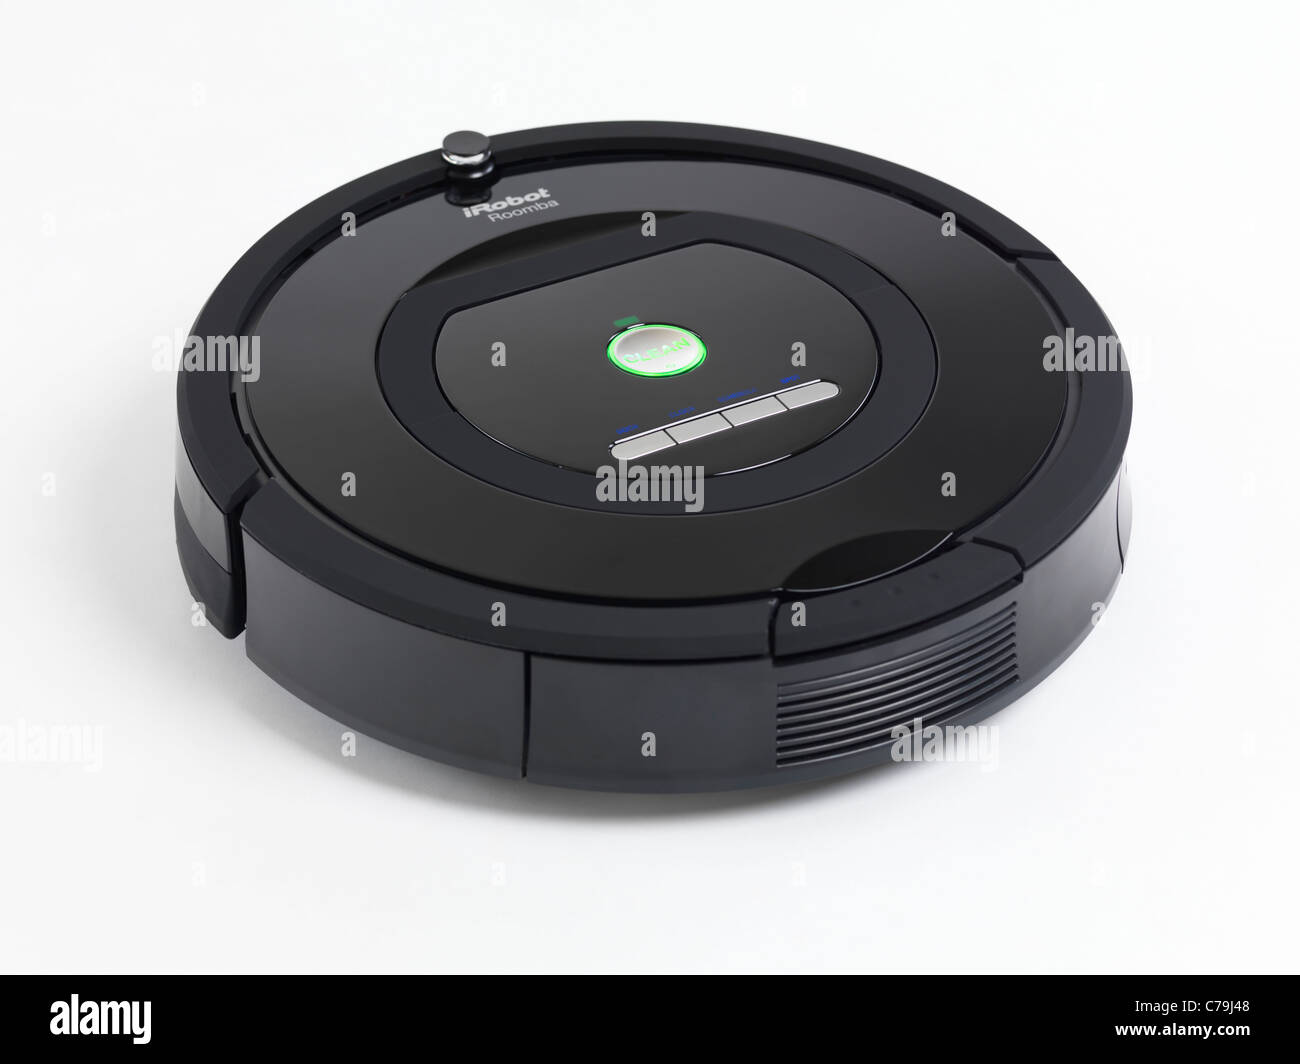 Roomba robot immagini e fotografie stock ad alta risoluzione - Alamy